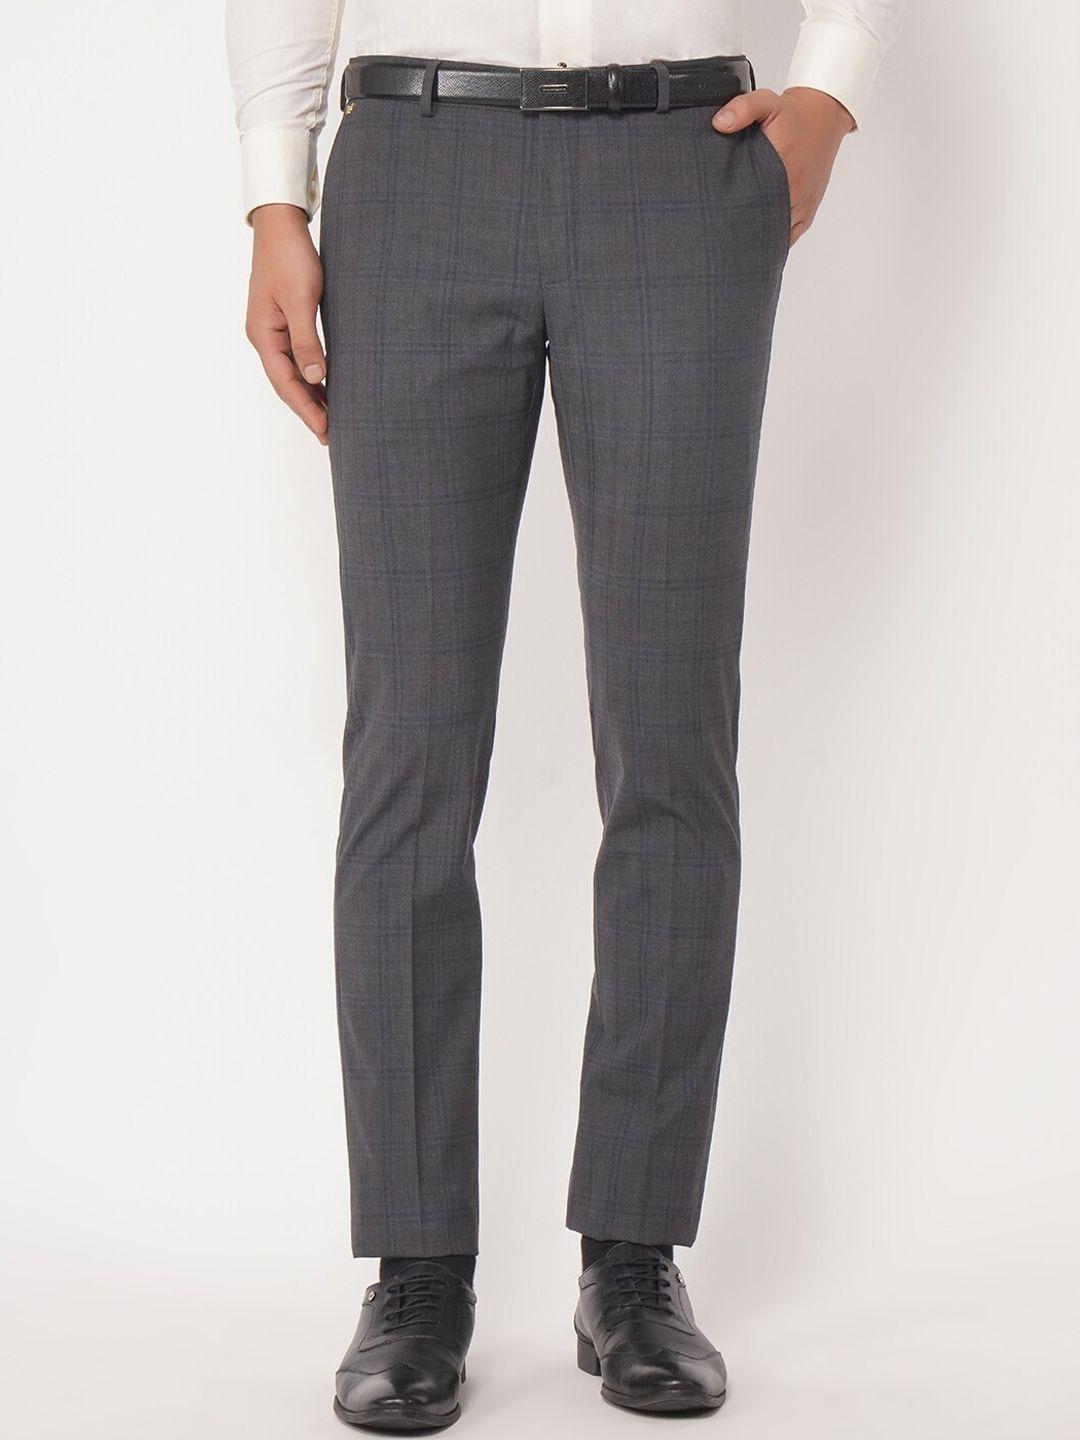 blackberrys-men-grey-checked-b-95-slim-fit-woollen-formal-trousers